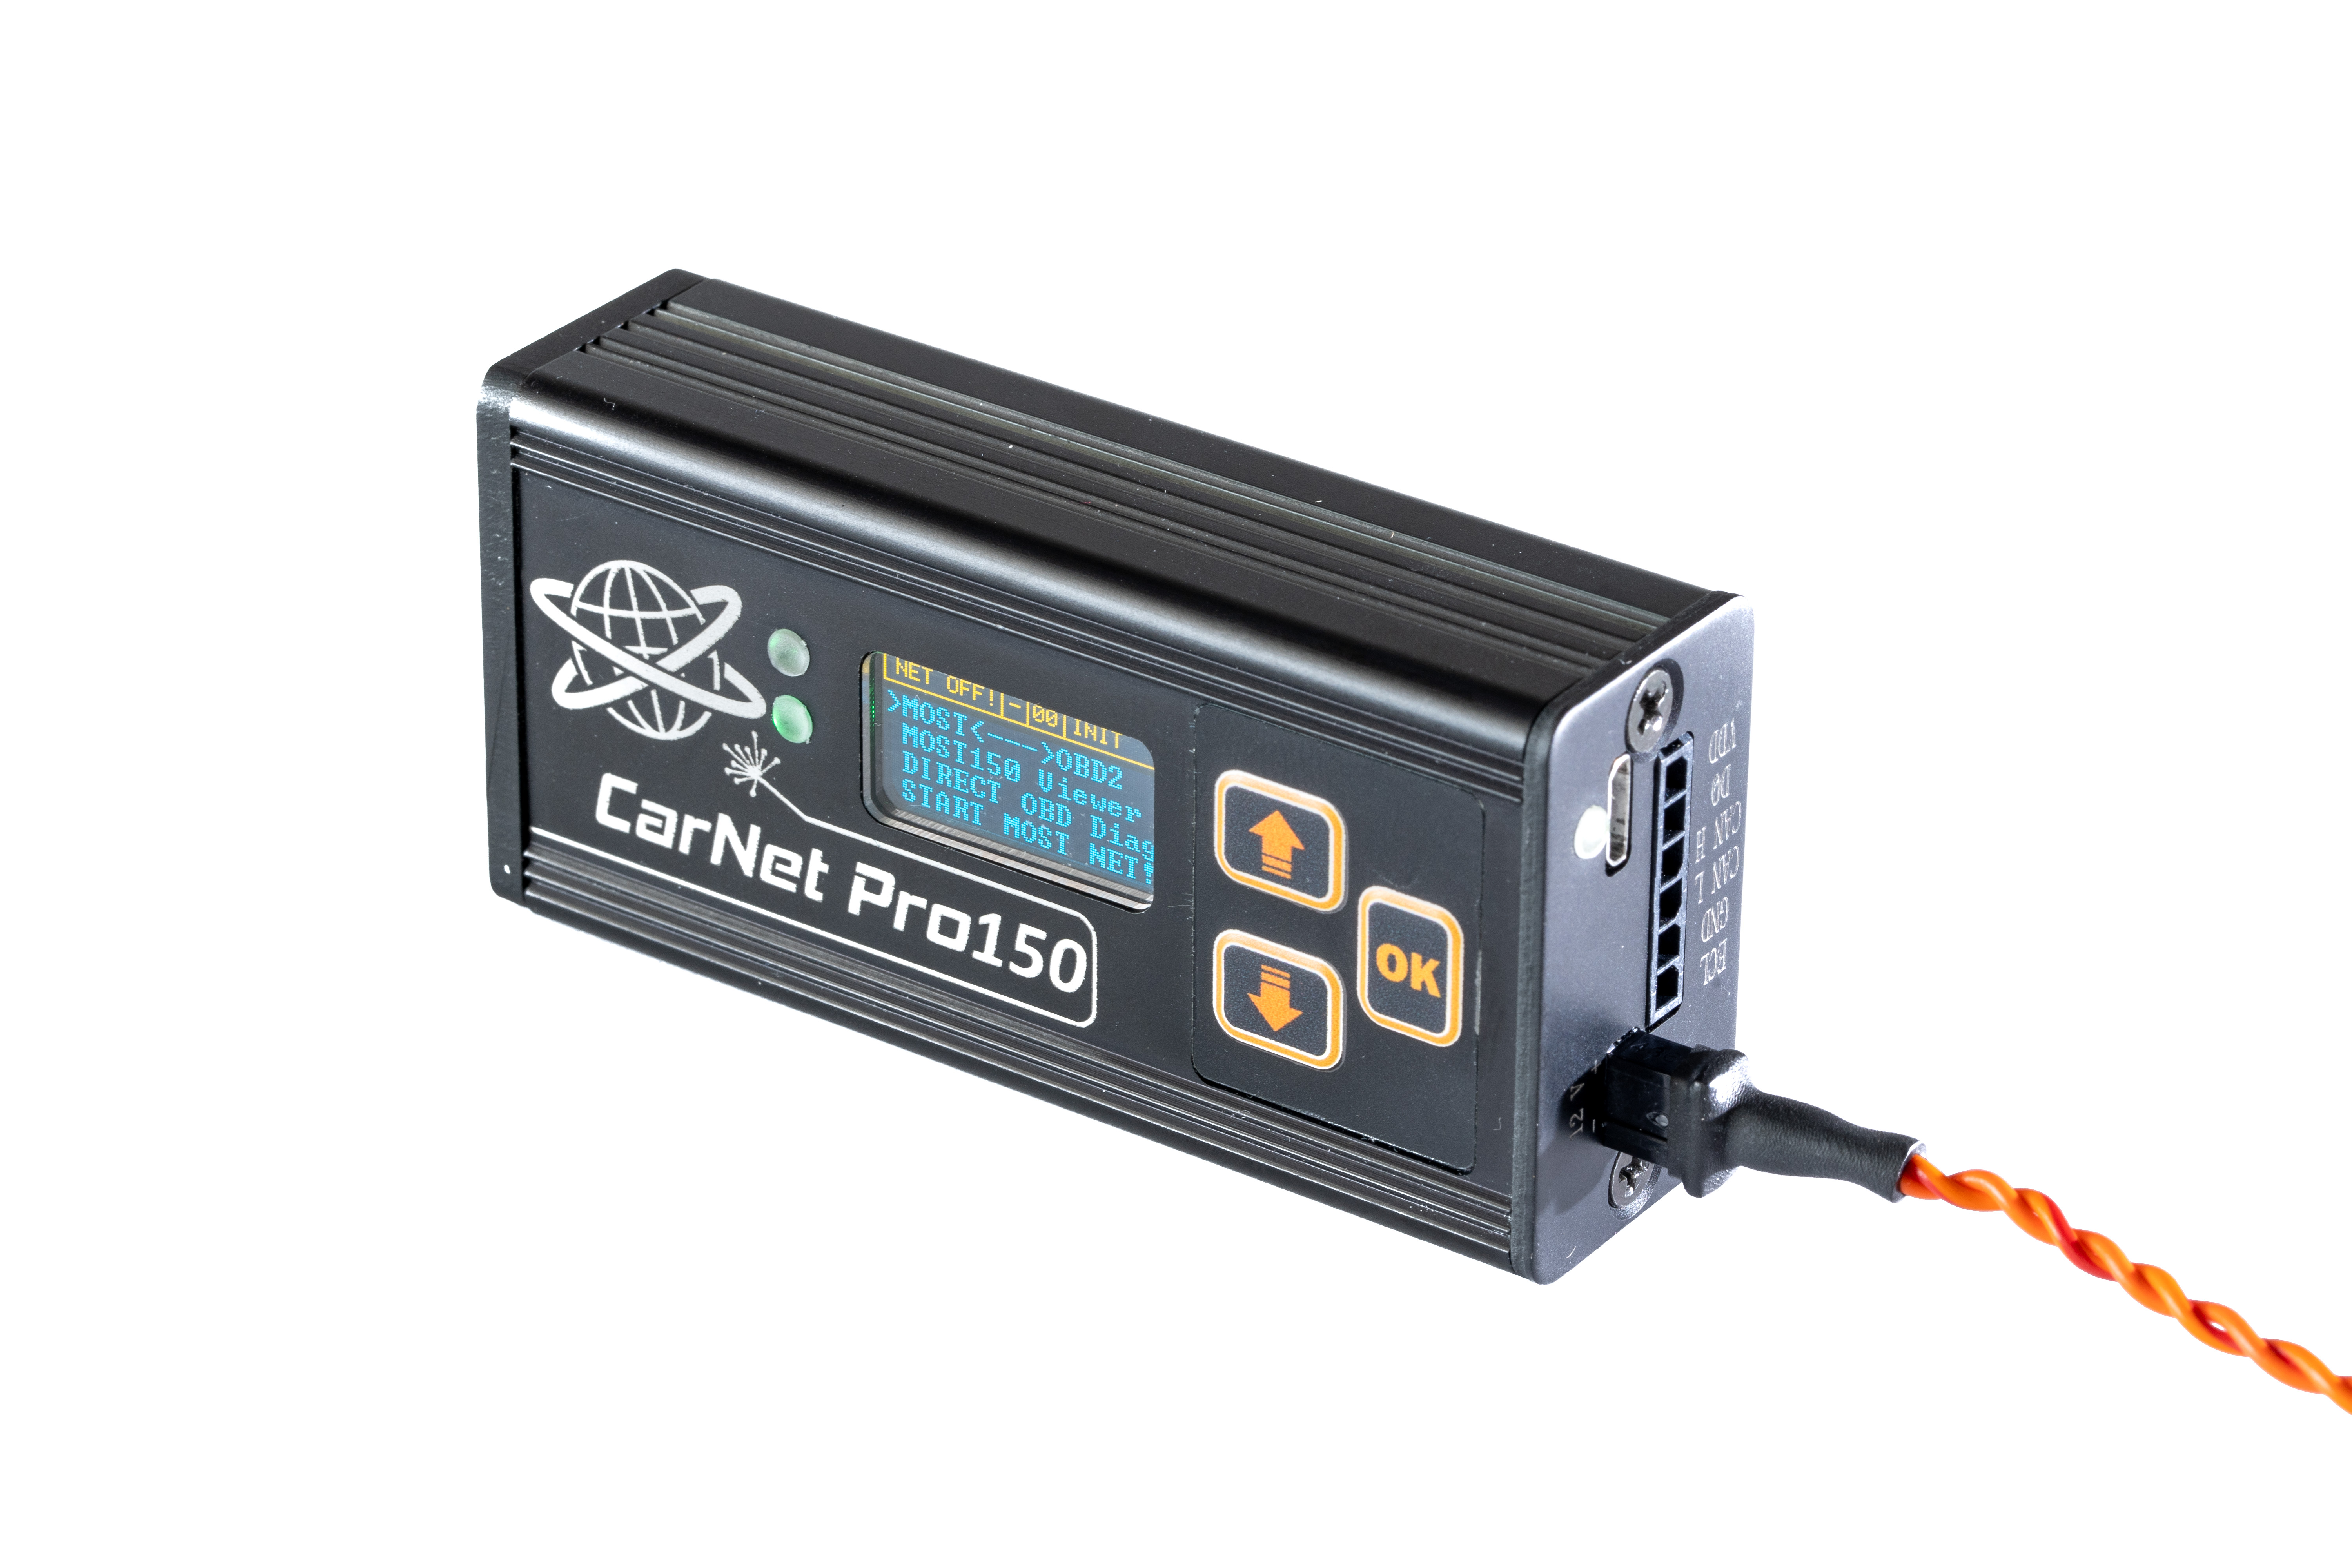 Carnet Pro150 Nie Ma Żadnych Konkurentów 100% Wyjątkowy Projekt Unikalne I Profesjonalne Urządzenie Oparte Na Technologii MOST Do Diagnostyki Samochodowej I Przeprogramowania Modułów Elektronicznych.